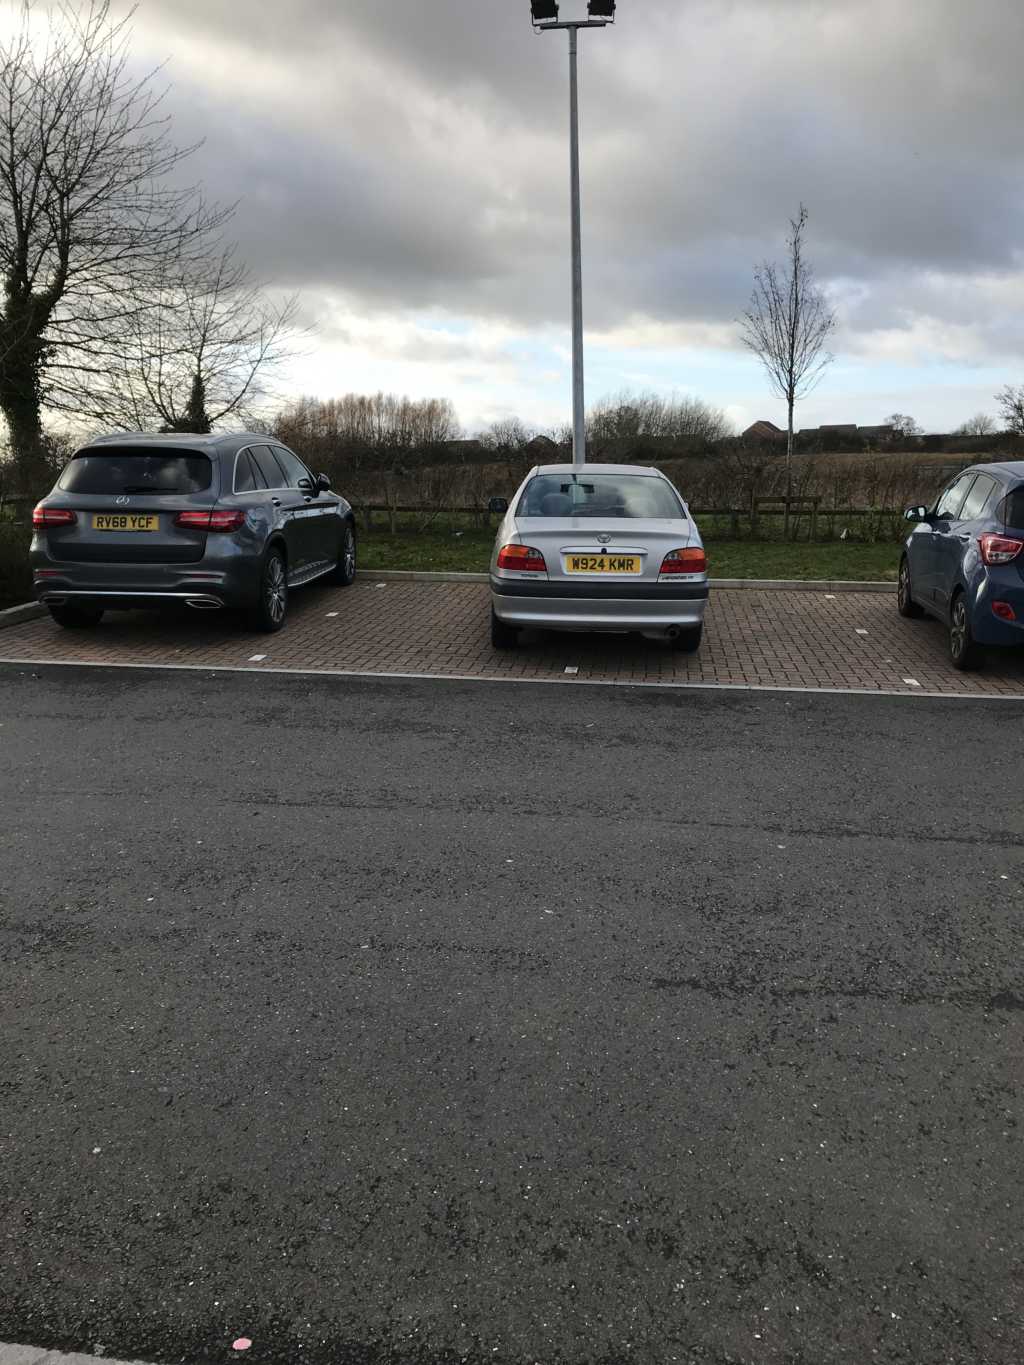 W924 KMR displaying Selfish Parking